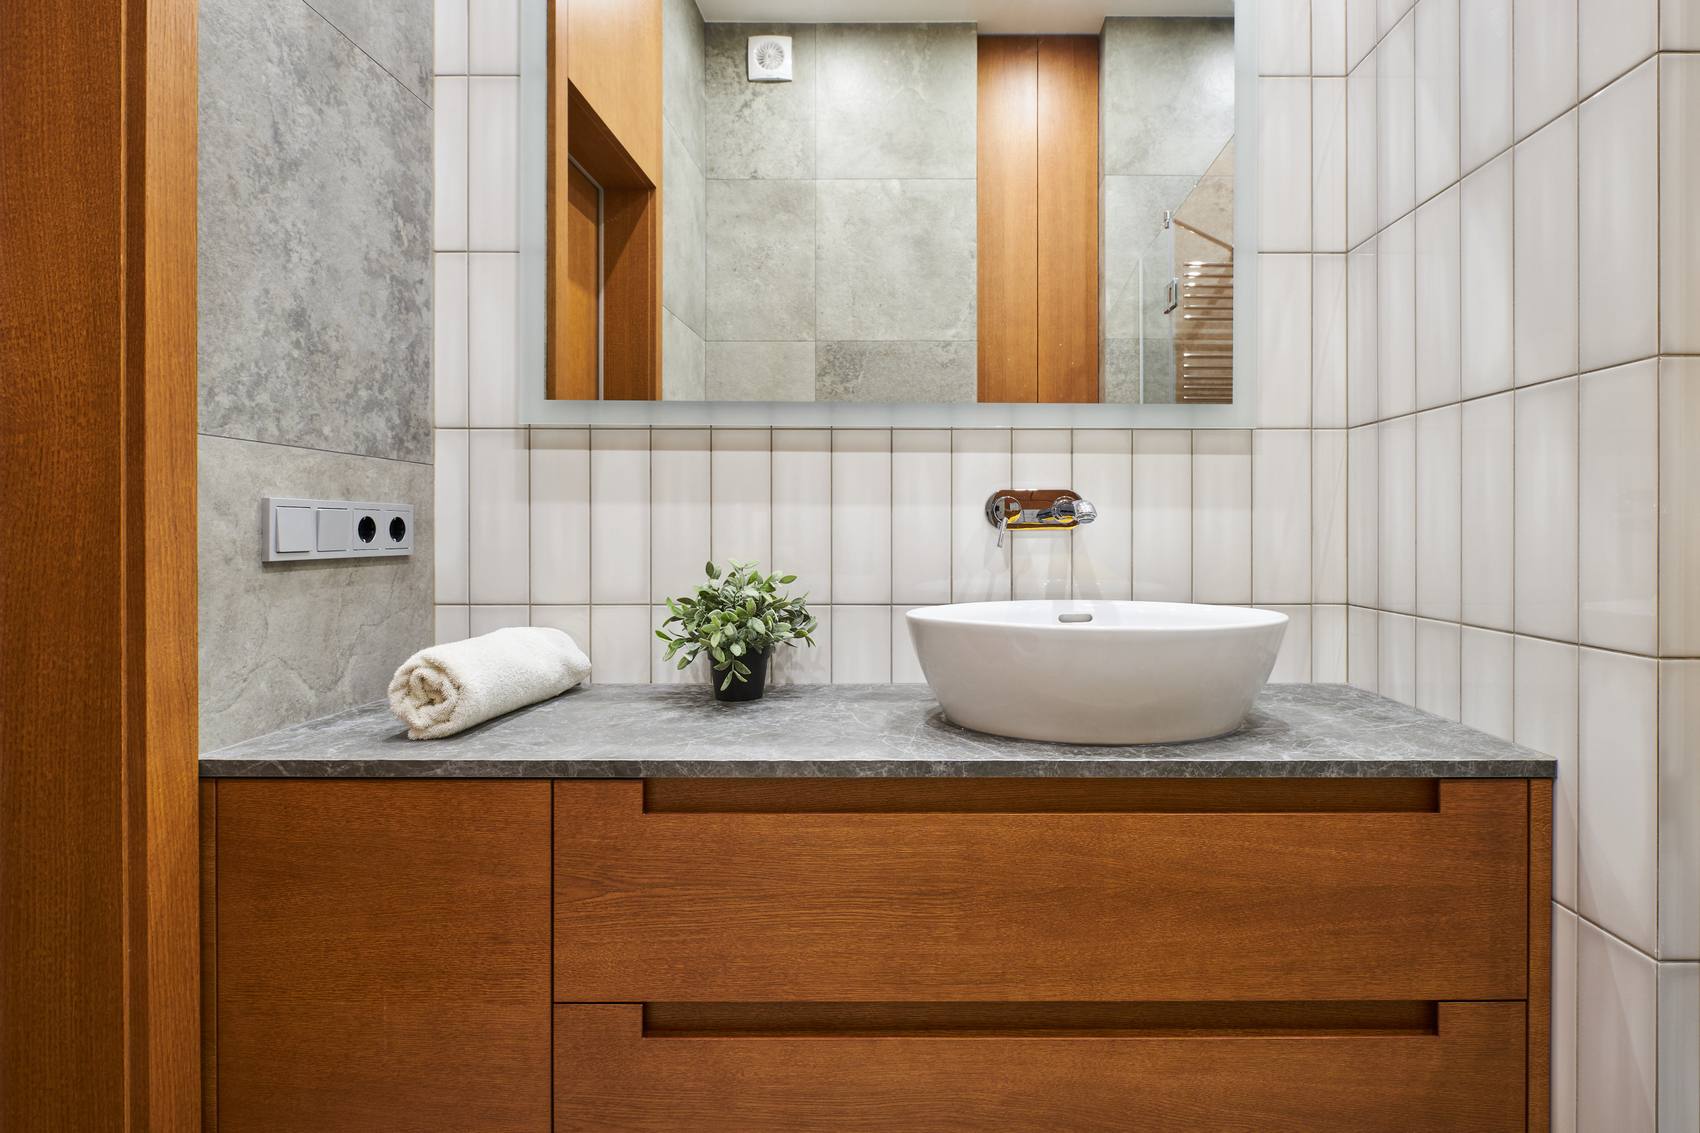 Gạch ốp tường phòng tắm được chia thành 2 mảng, một bên sử dụng gạch xi măng màu xám tương đồng với sàn nhà, phần còn lại ốp gạch thẻ dọc màu trắng với về mặt sáng bóng.